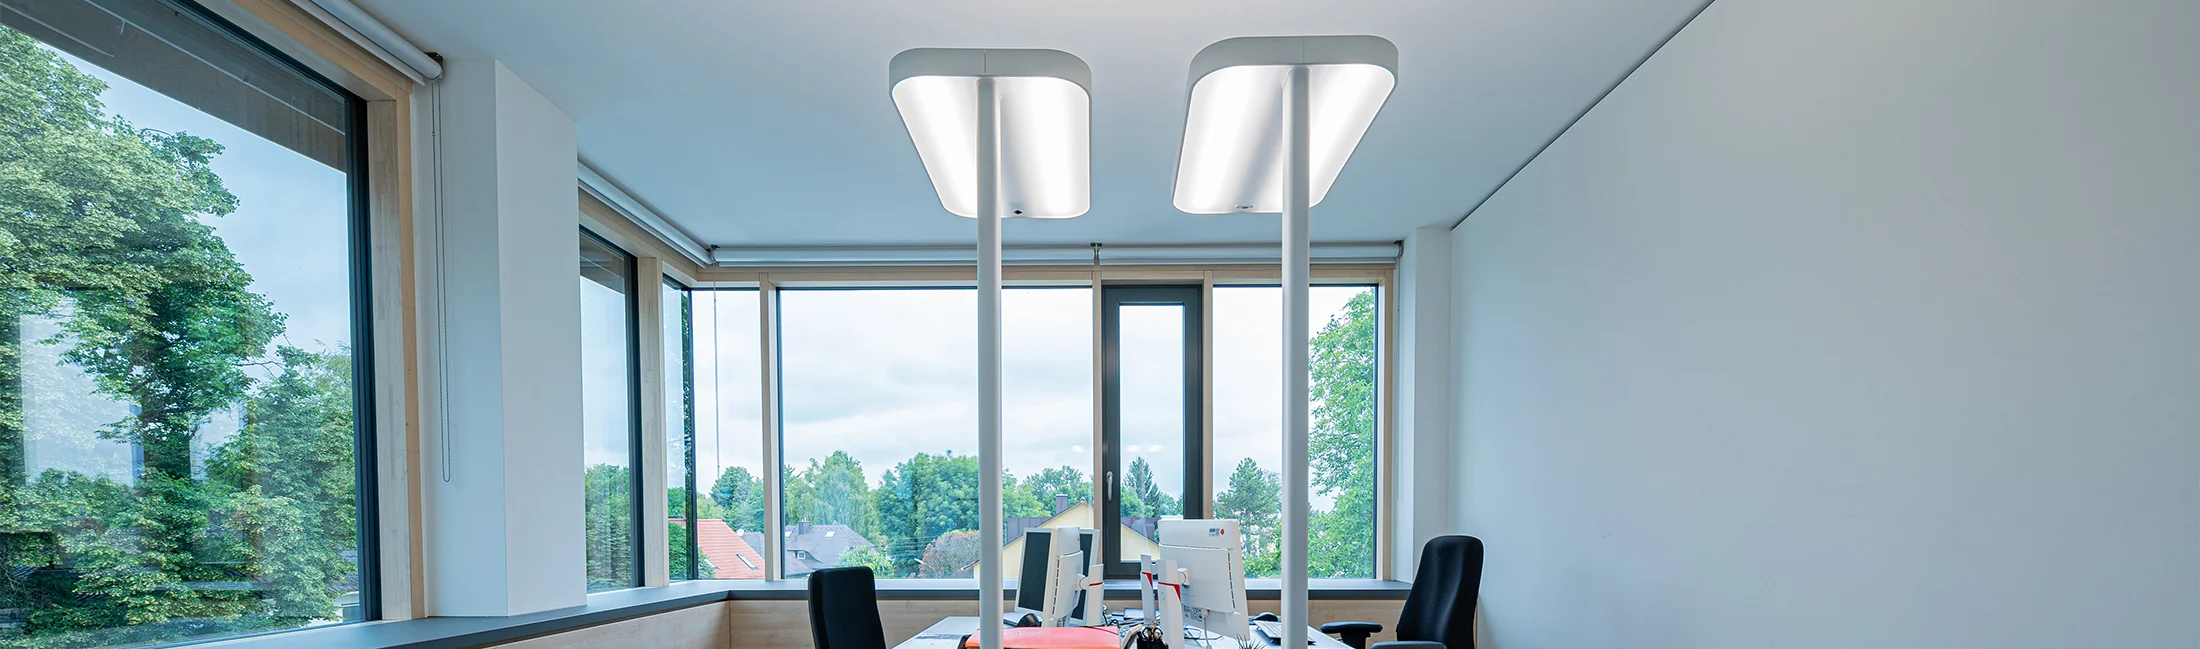 Eine Büro Stehleuchte mit LED für die optimale Ausleuchtung